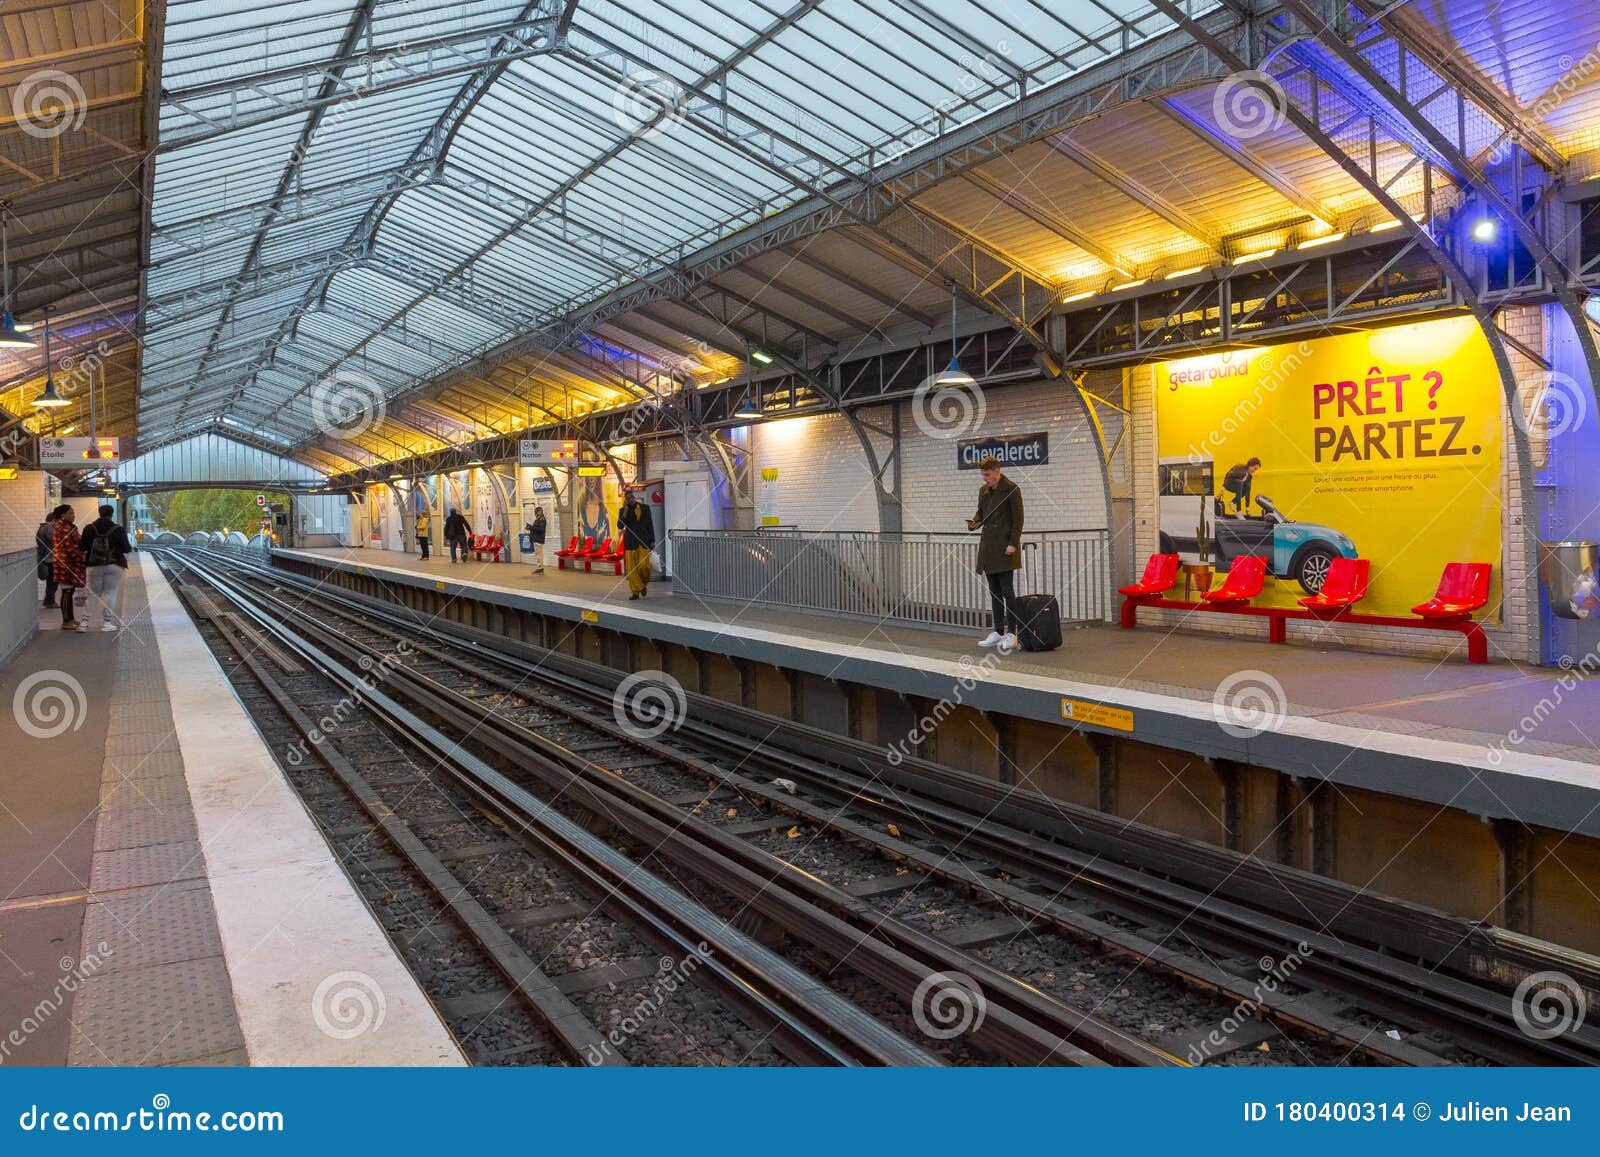 2019年法国巴黎大区可用手机乘公交地铁 - 城市会员新闻 - WTCF-世界旅游城市联合会官方网站